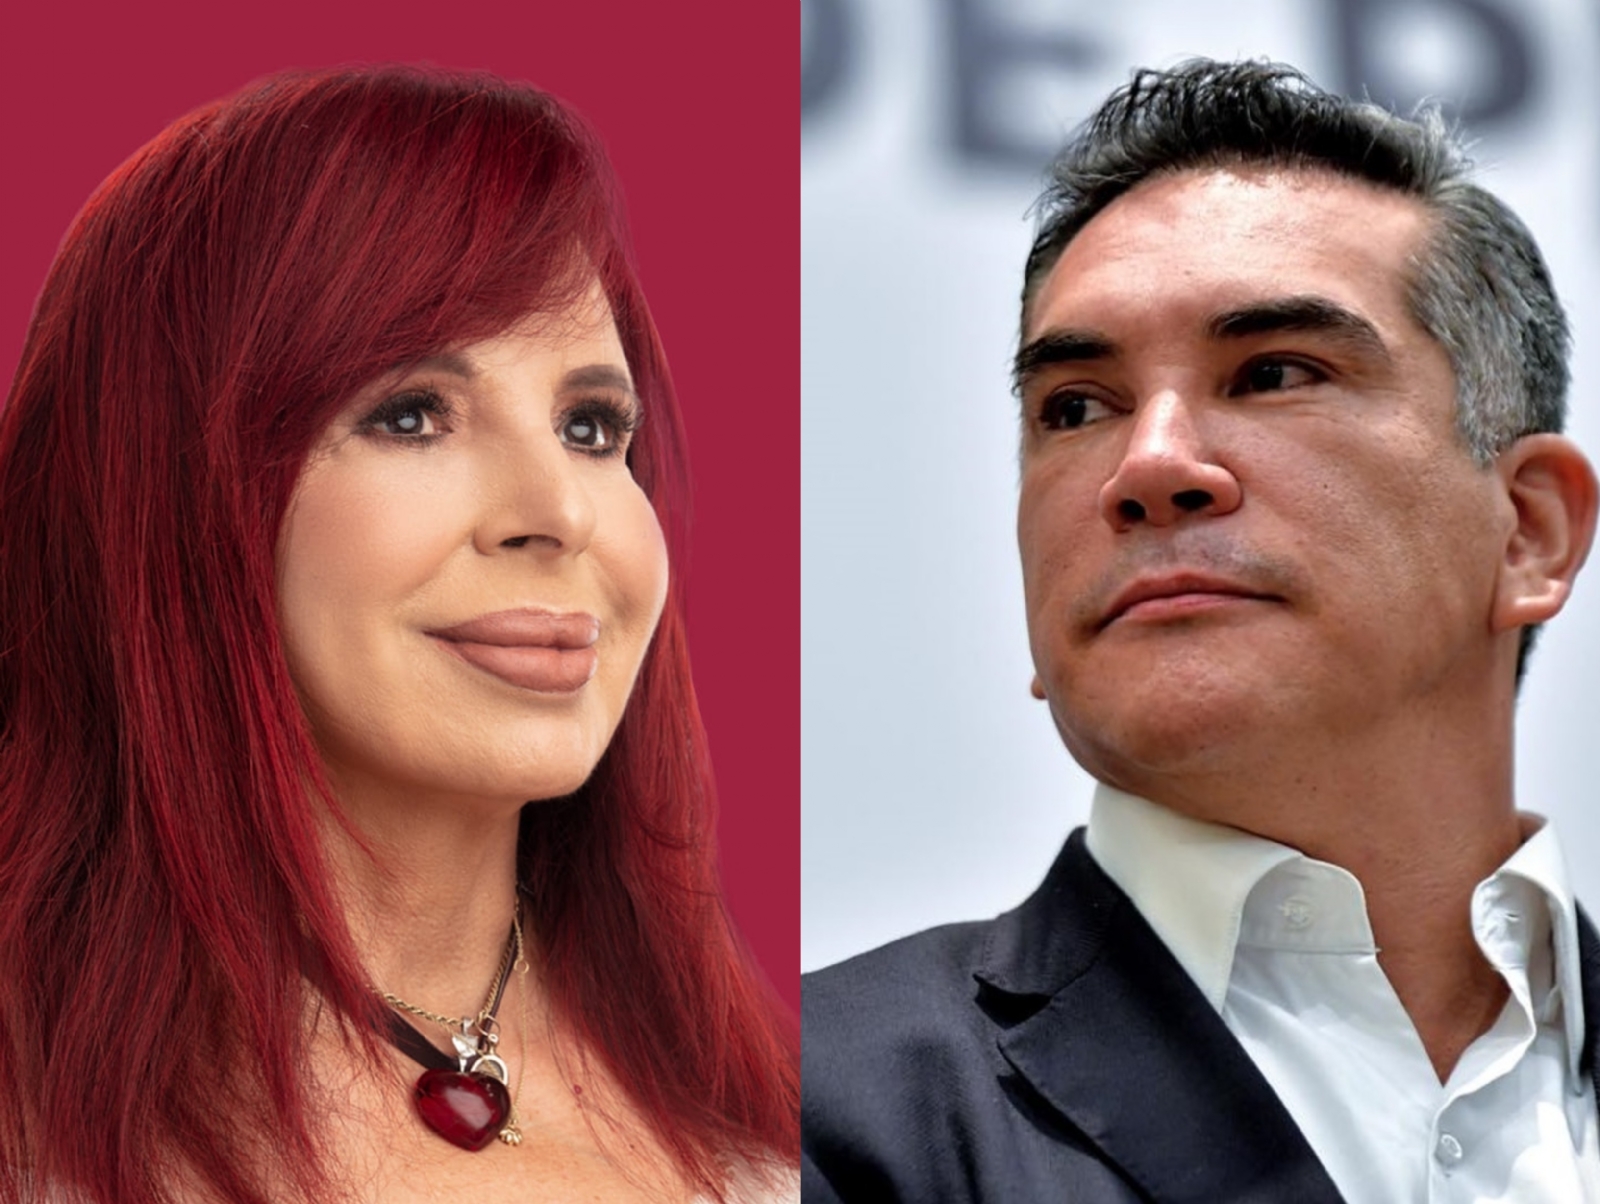 Layda Sansores vs 'Alito' Moreno: La guerra de audioescándalos en Campeche